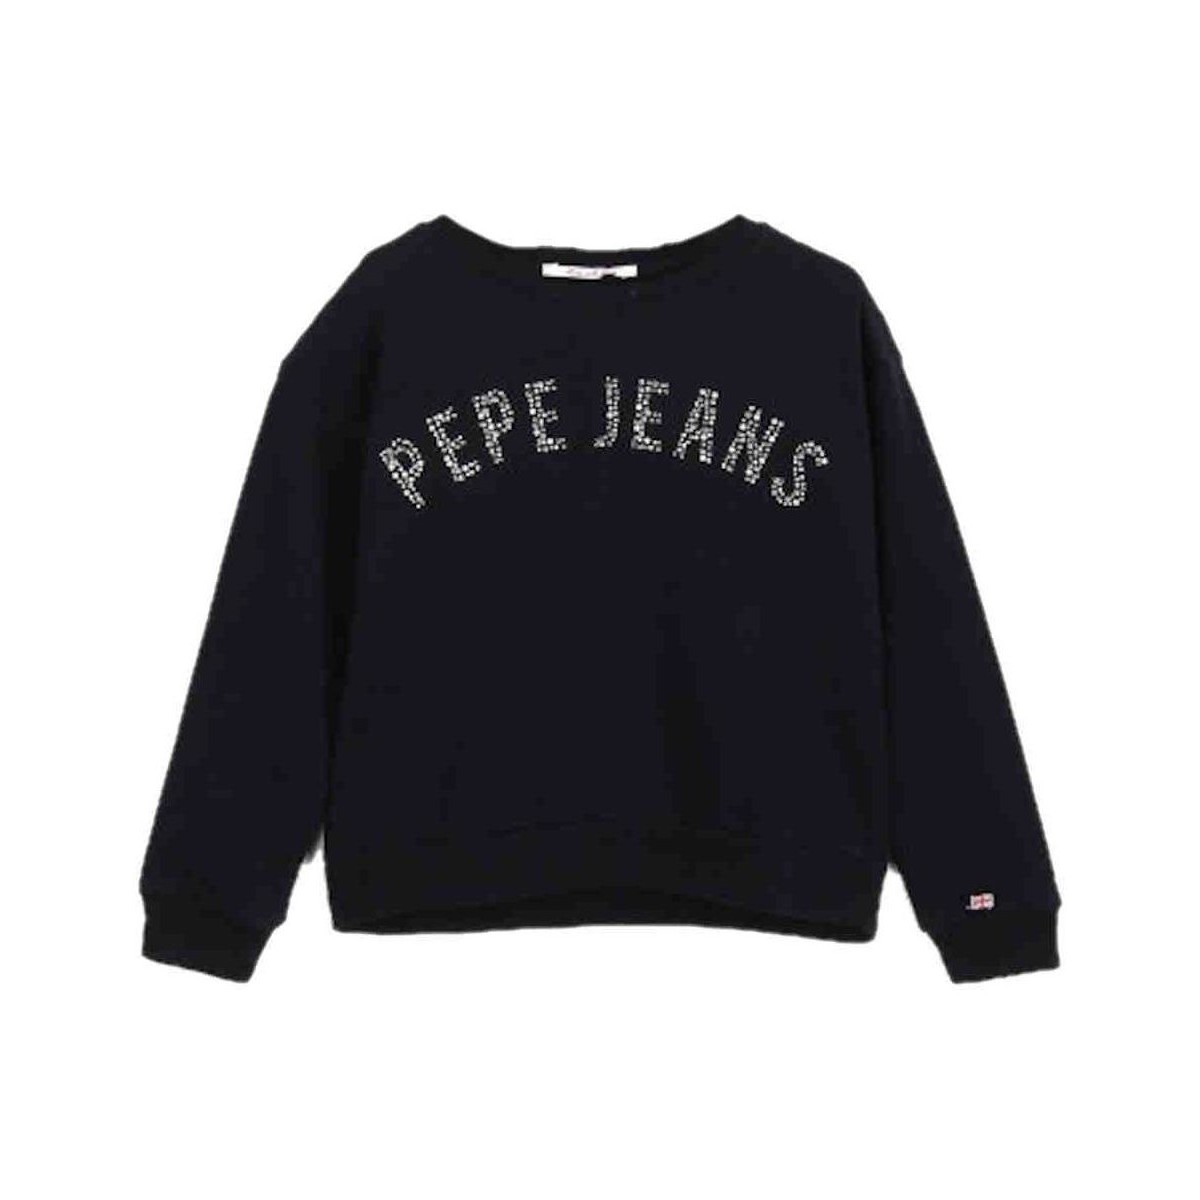 Φούτερ Pepe jeans -